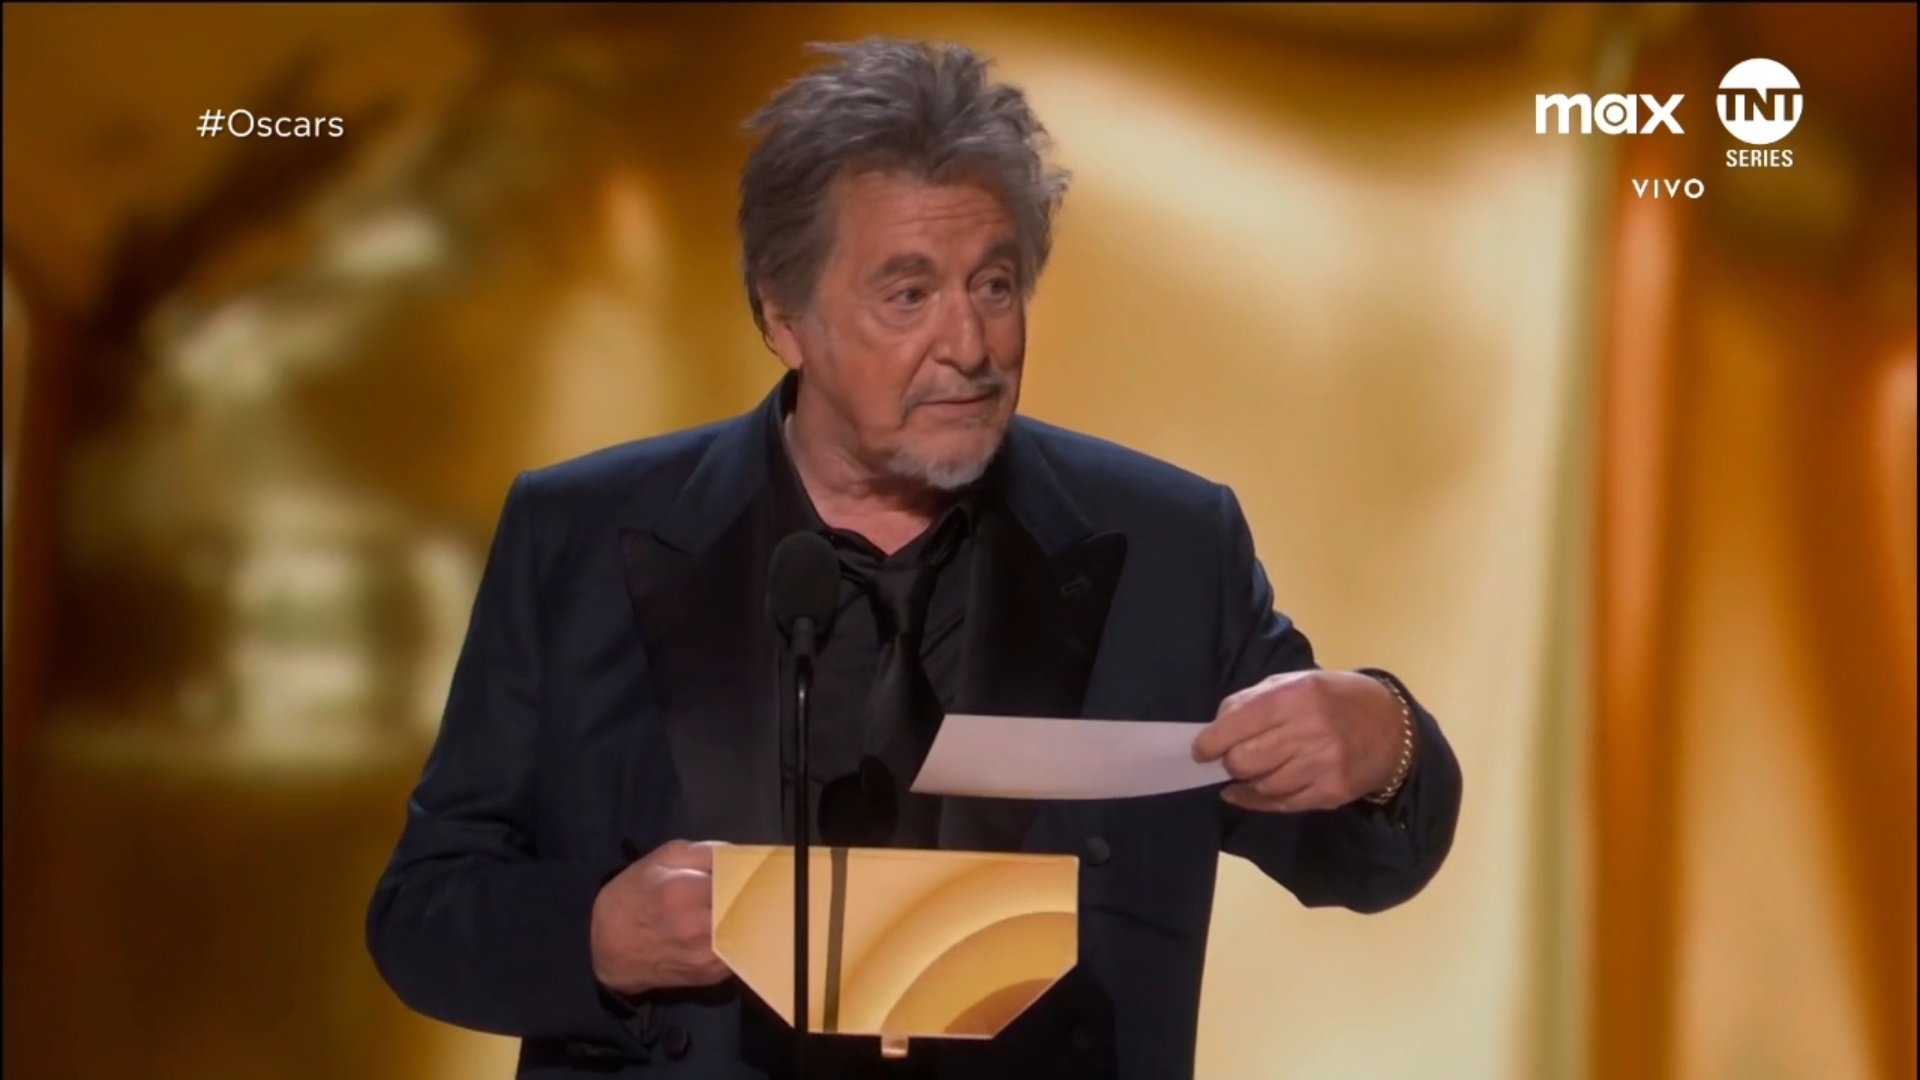 El error de Al Pacino al presentar el Oscar a Mejor Película